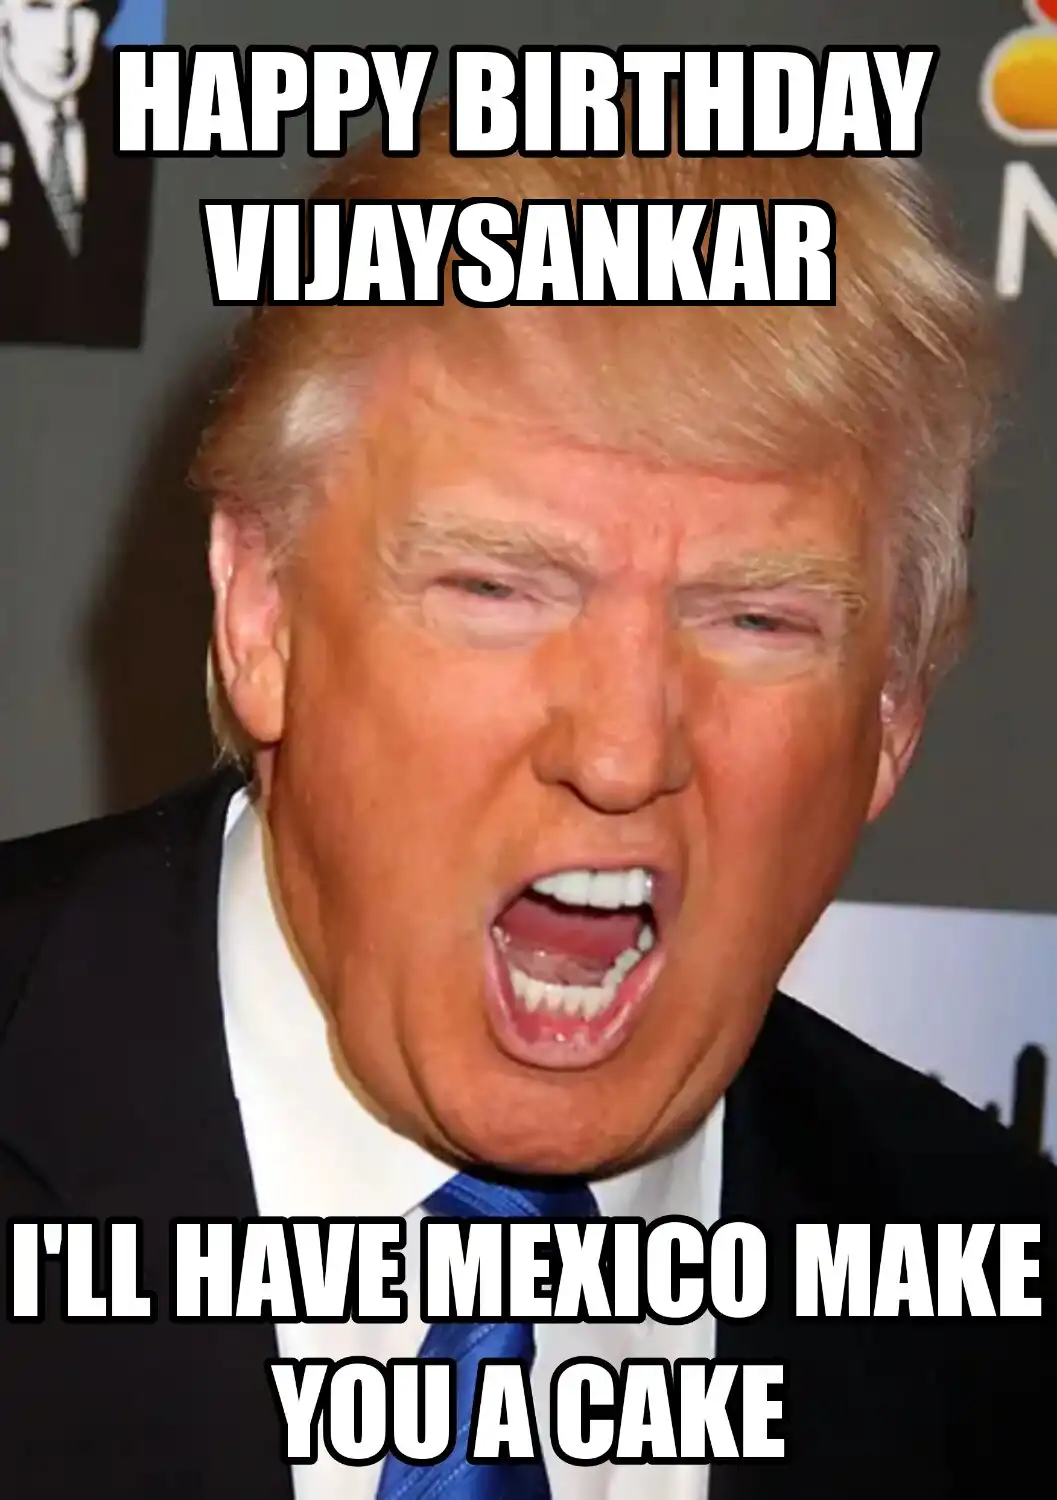 Happy Birthday Vijaysankar Mexico Make You A Cake Meme